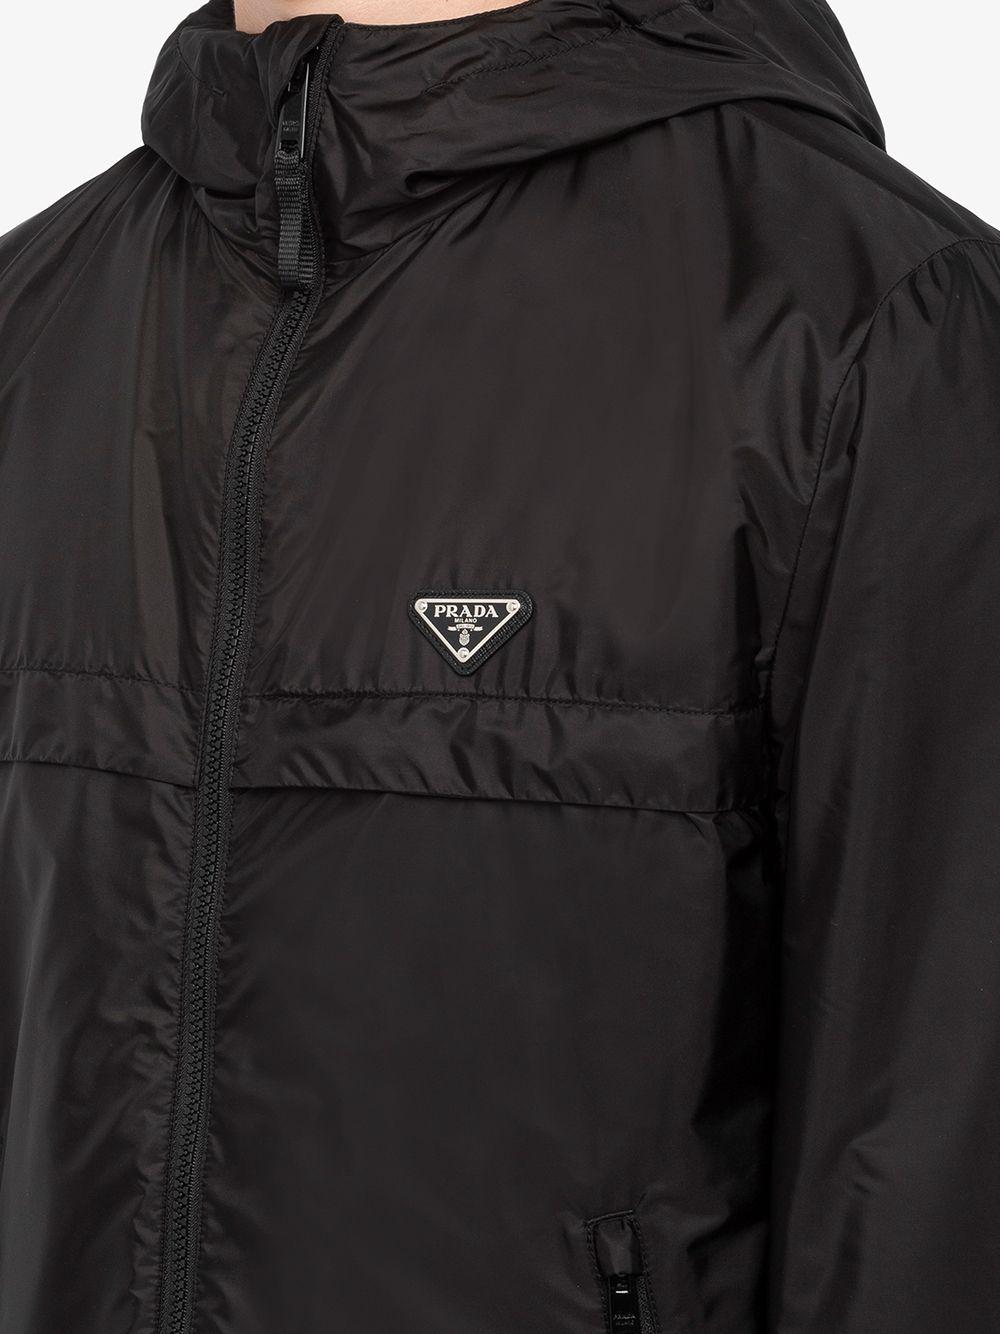 Prada Re-nylon Blouson Jacket in Black for Men | Lyst